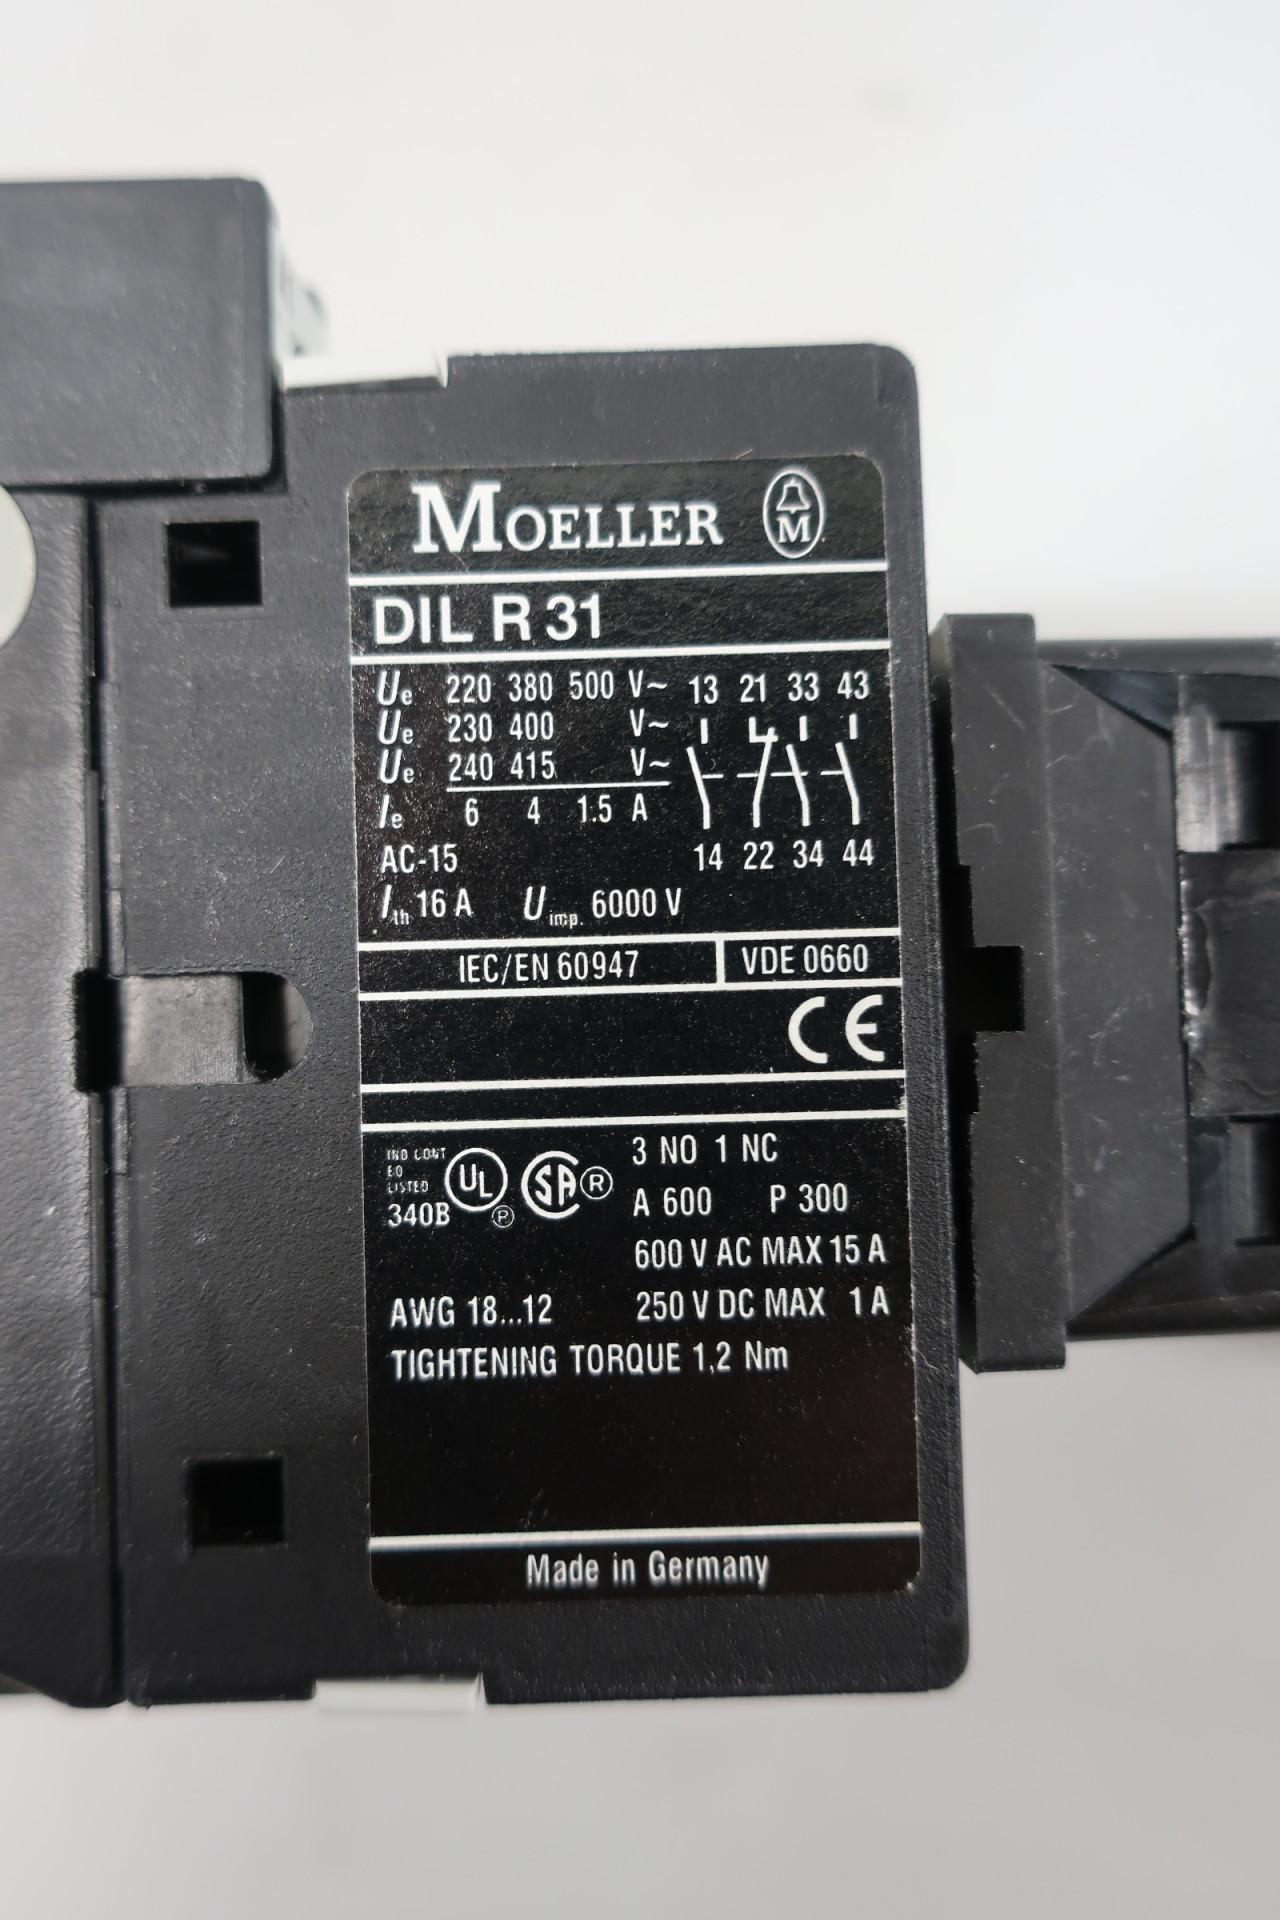 Moeller Dil R 31 230 v/240 V // dilr 31 